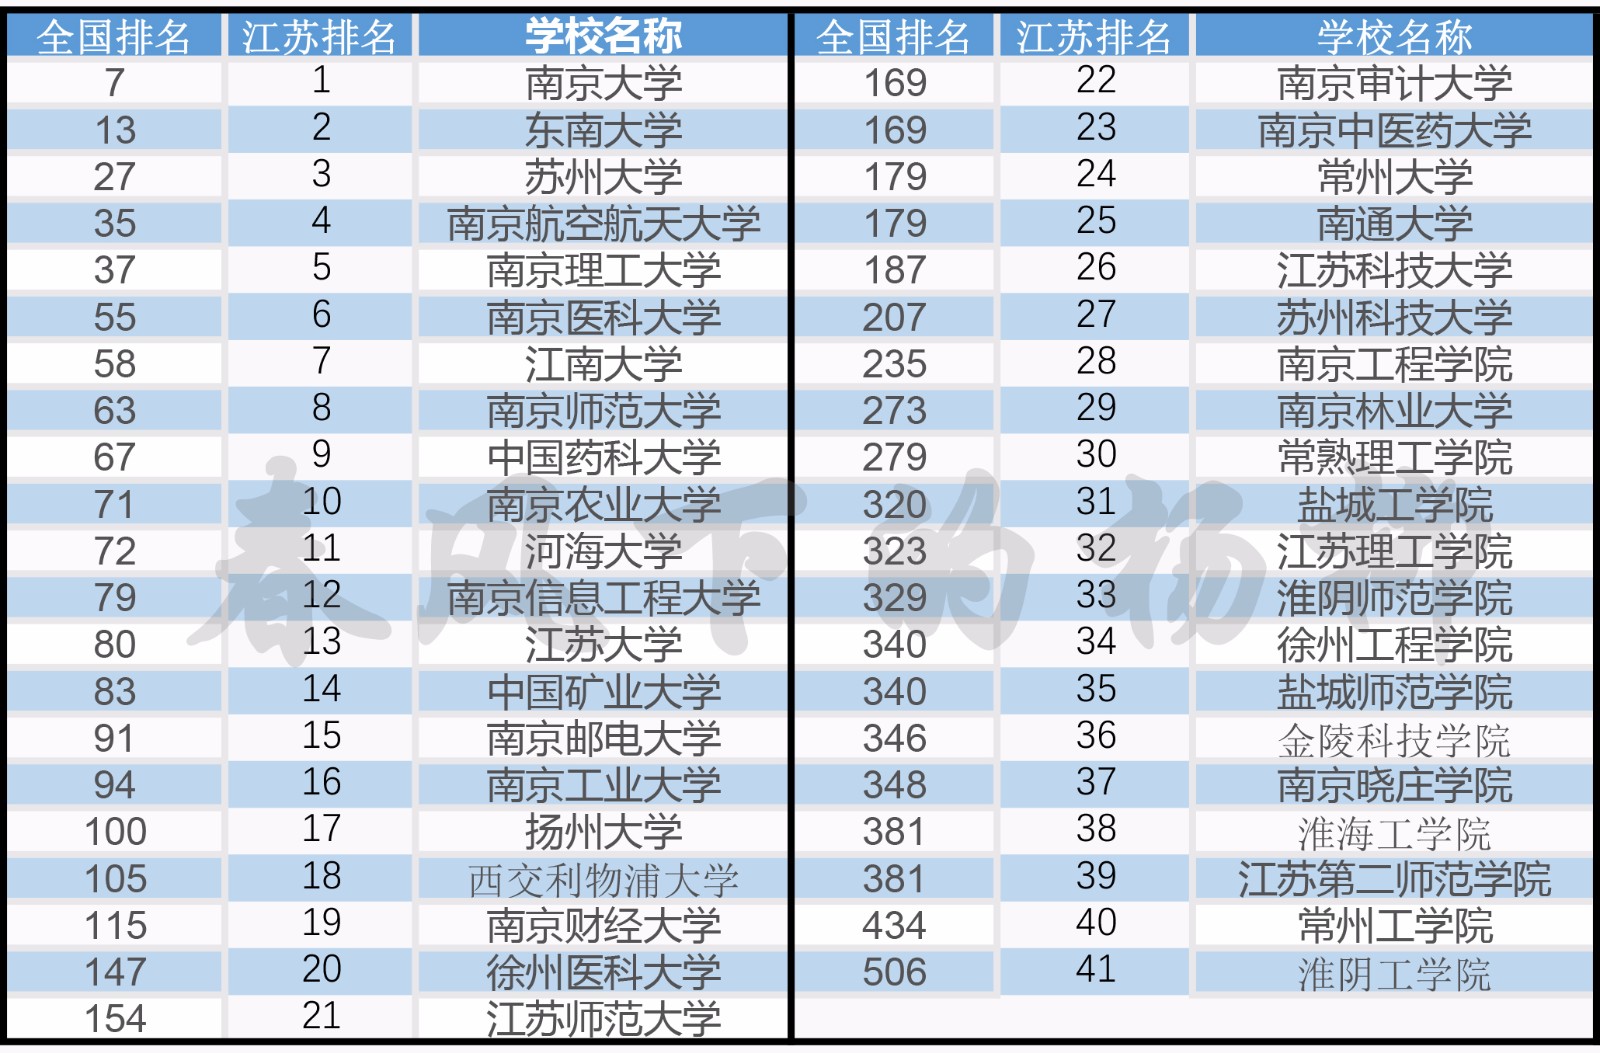 江苏有41所大学入选中国最好大学,排名情况